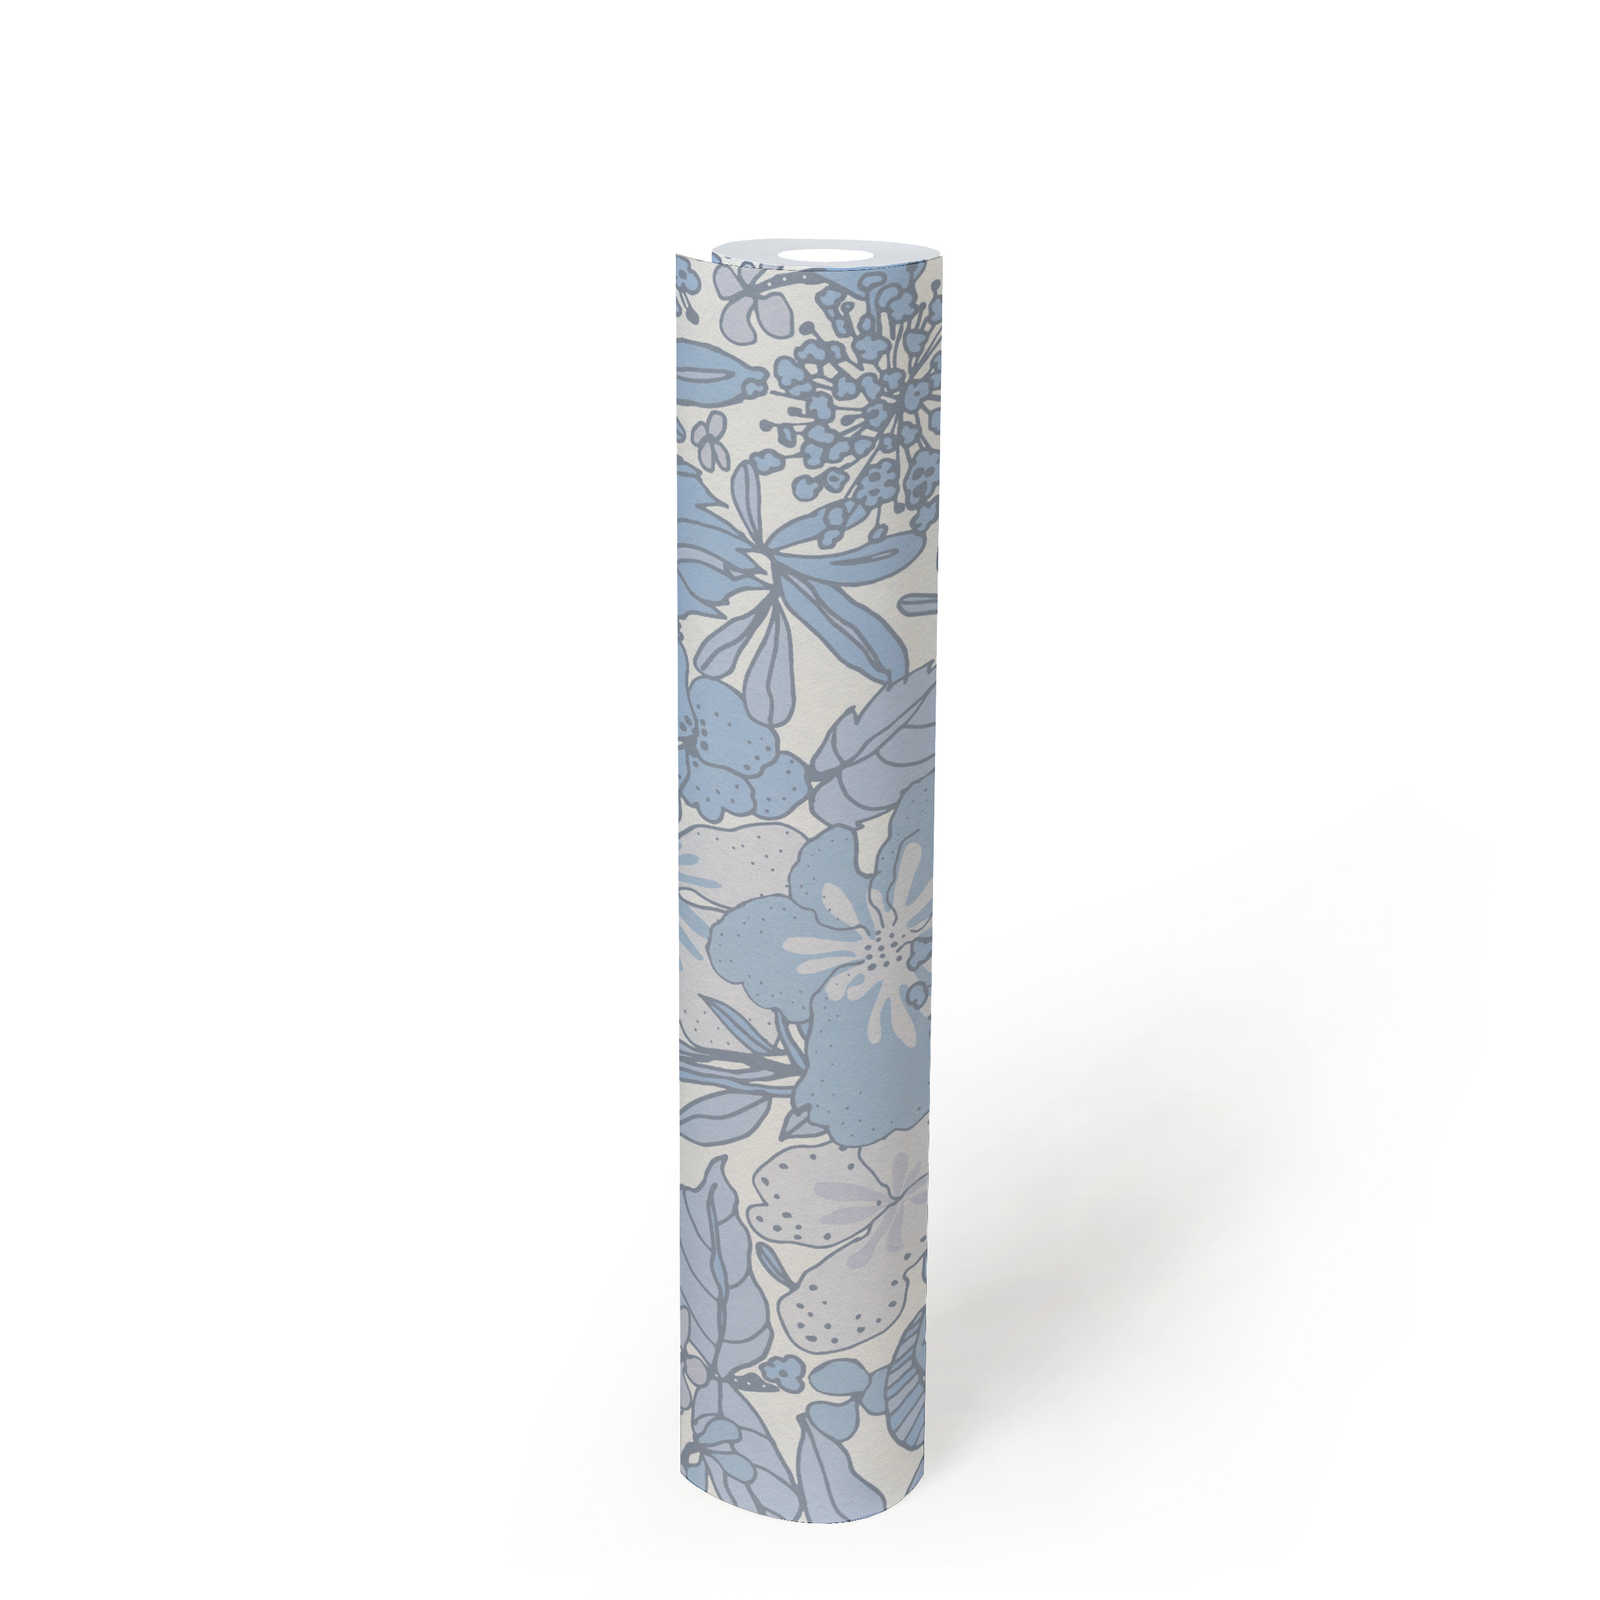             Papier peint bleu et blanc avec motif floral rétro des années 70 - gris, bleu, blanc
        